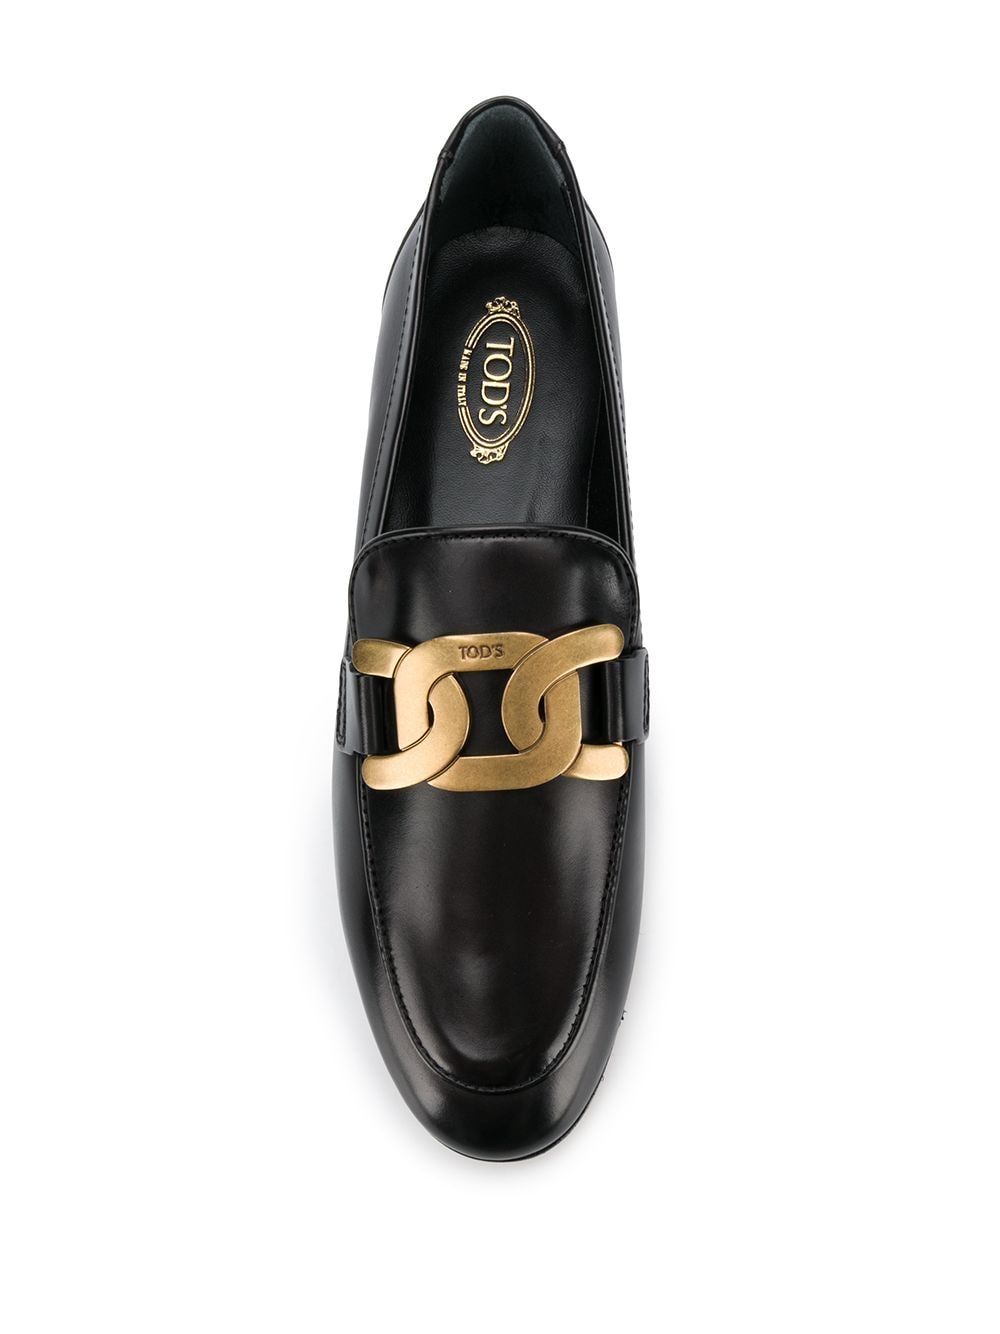 Đôi giày lười dây xích bằng da màu đen cho phụ nữ - Bộ sưu tập SS24